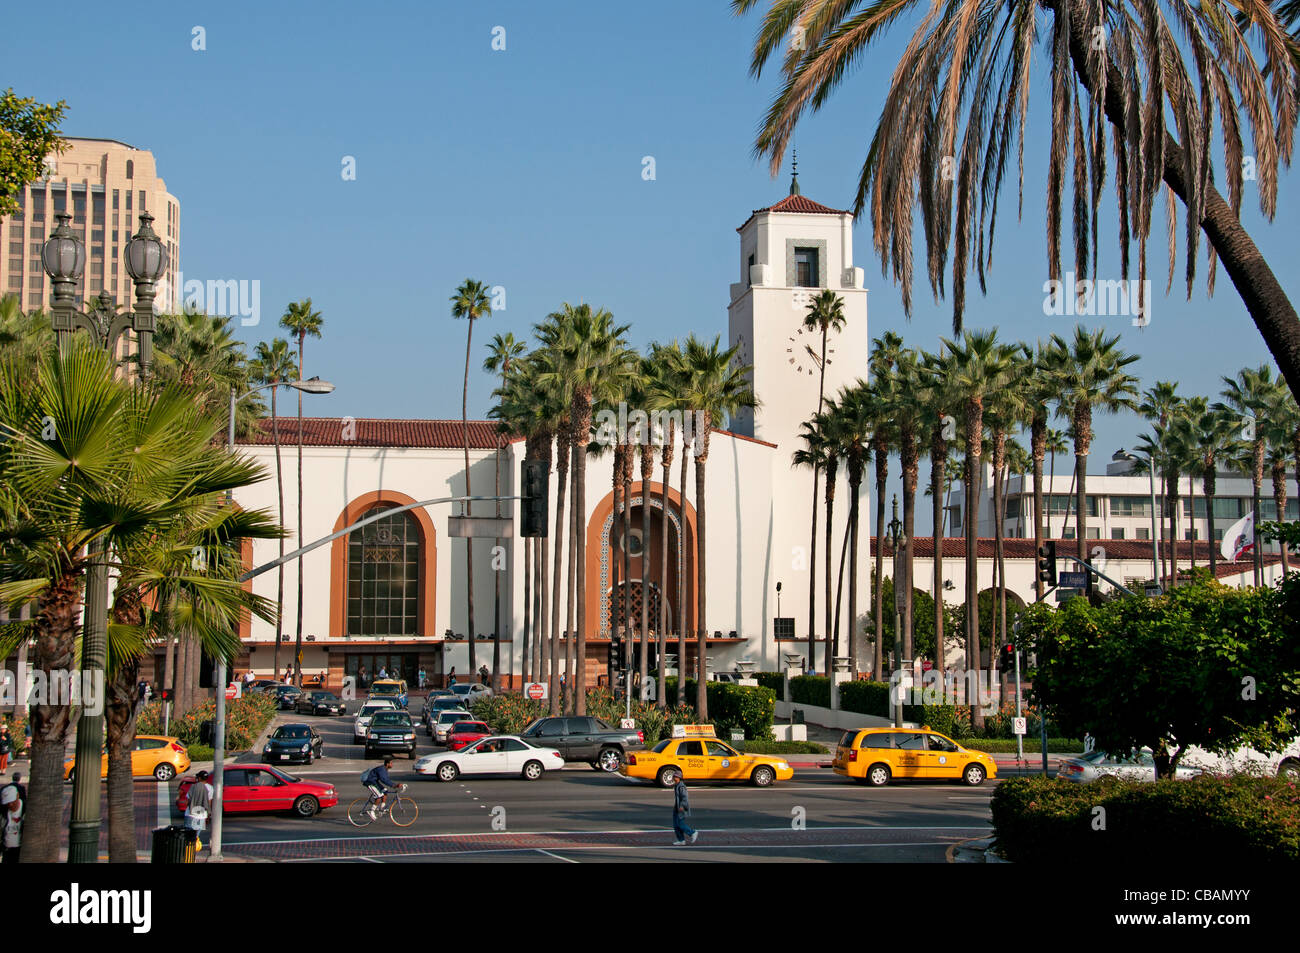 Union Station El Pueblo Innenstadt Spanisch Spanien Los Angeles Kalifornien Vereinigte Staaten Stockfoto